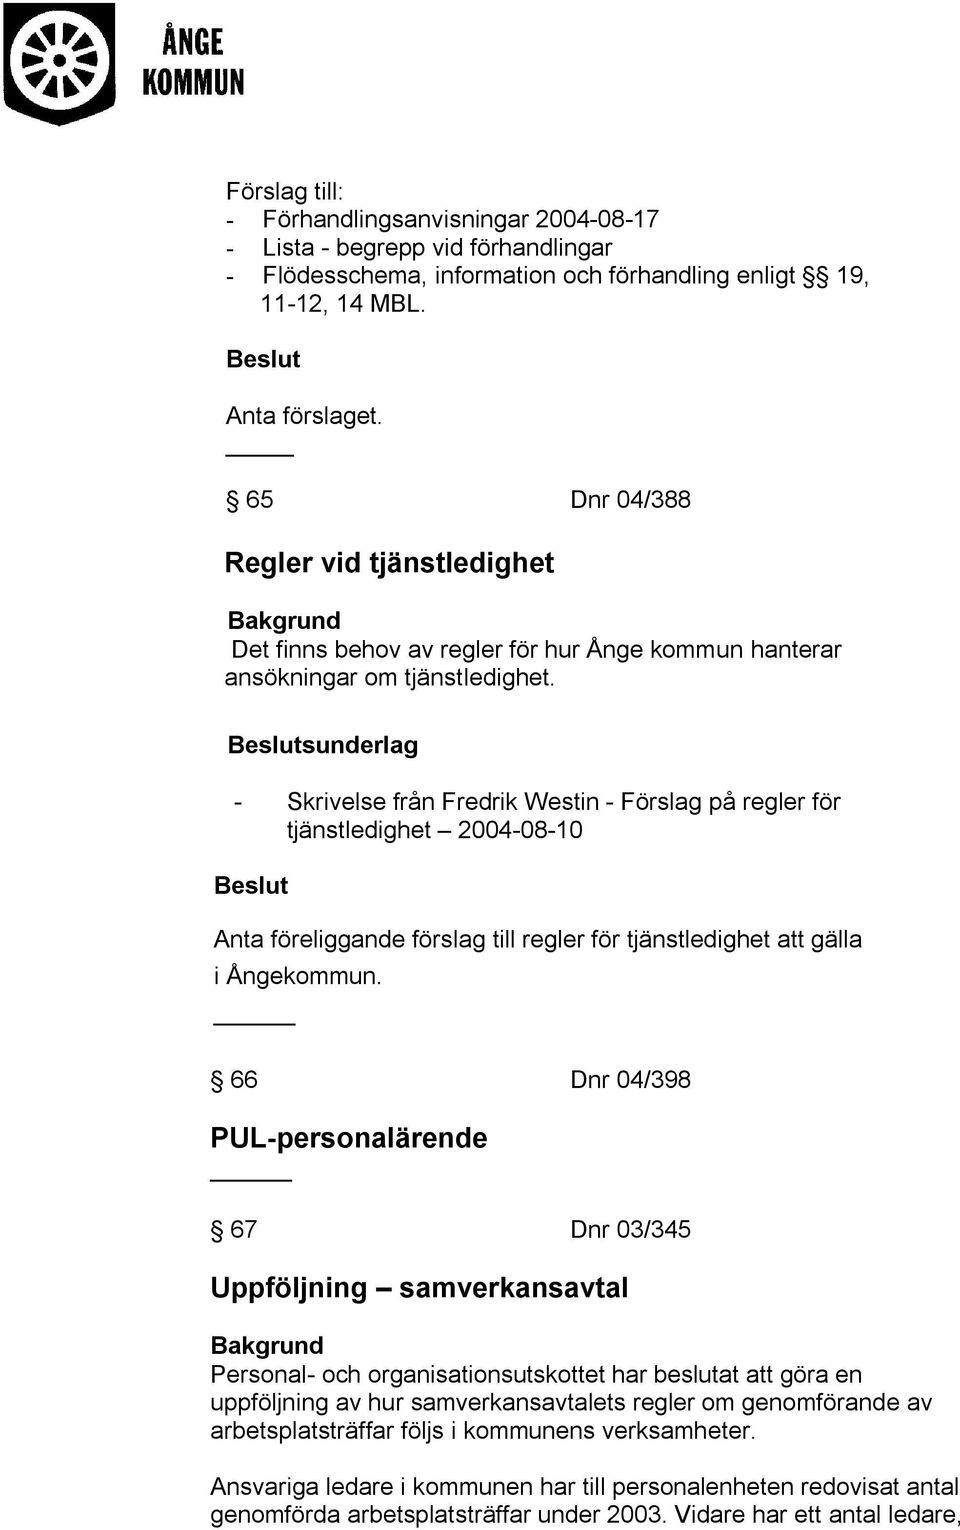 sunderlag - Skrivelse från Fredrik Westin - Förslag på regler för tjänstledighet 2004-08-10 Anta föreliggande förslag till regler för tjänstledighet att gälla i Ångekommun.